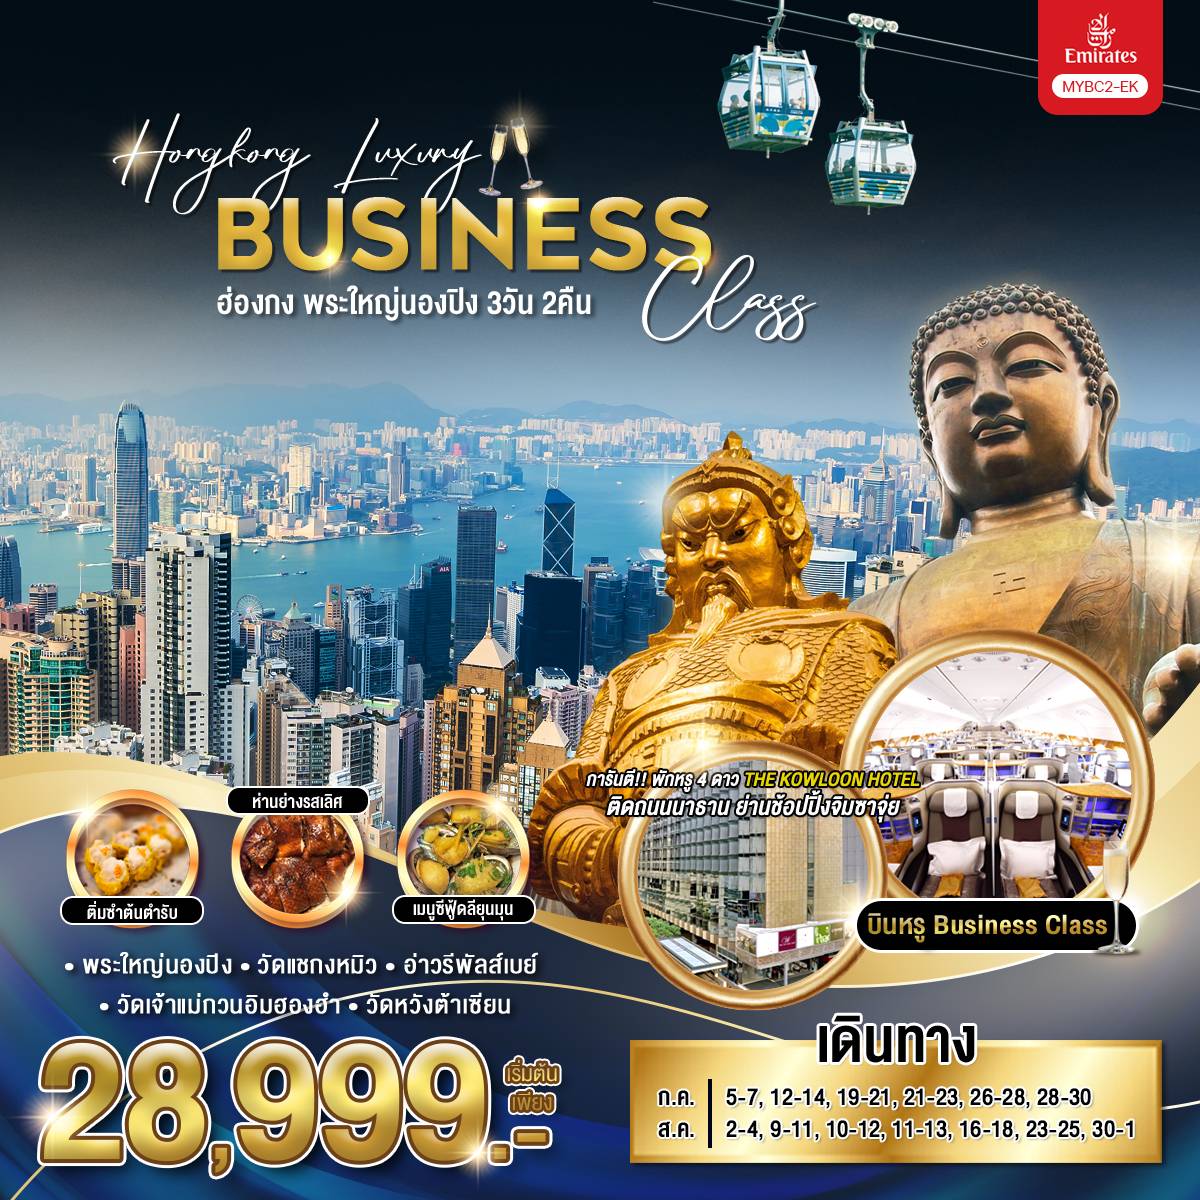 ทัวร์ฮ่องกง Hongkong Luxury Business Class ฮ่องกง พระใหญ่นองปิง 3วัน 2คืน (EK)